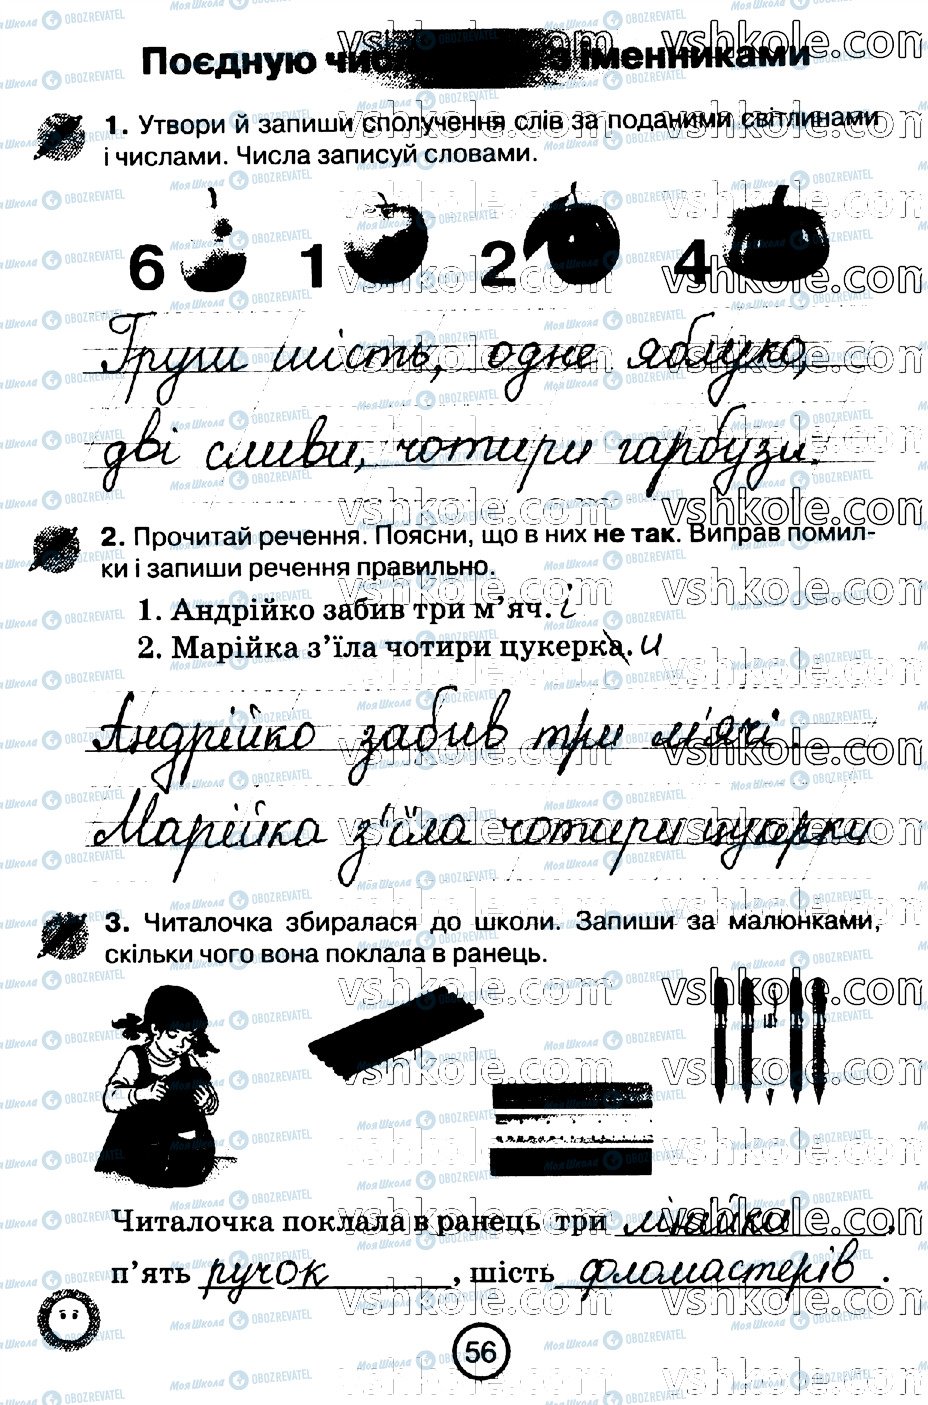 ГДЗ Укр мова 2 класс страница стр56